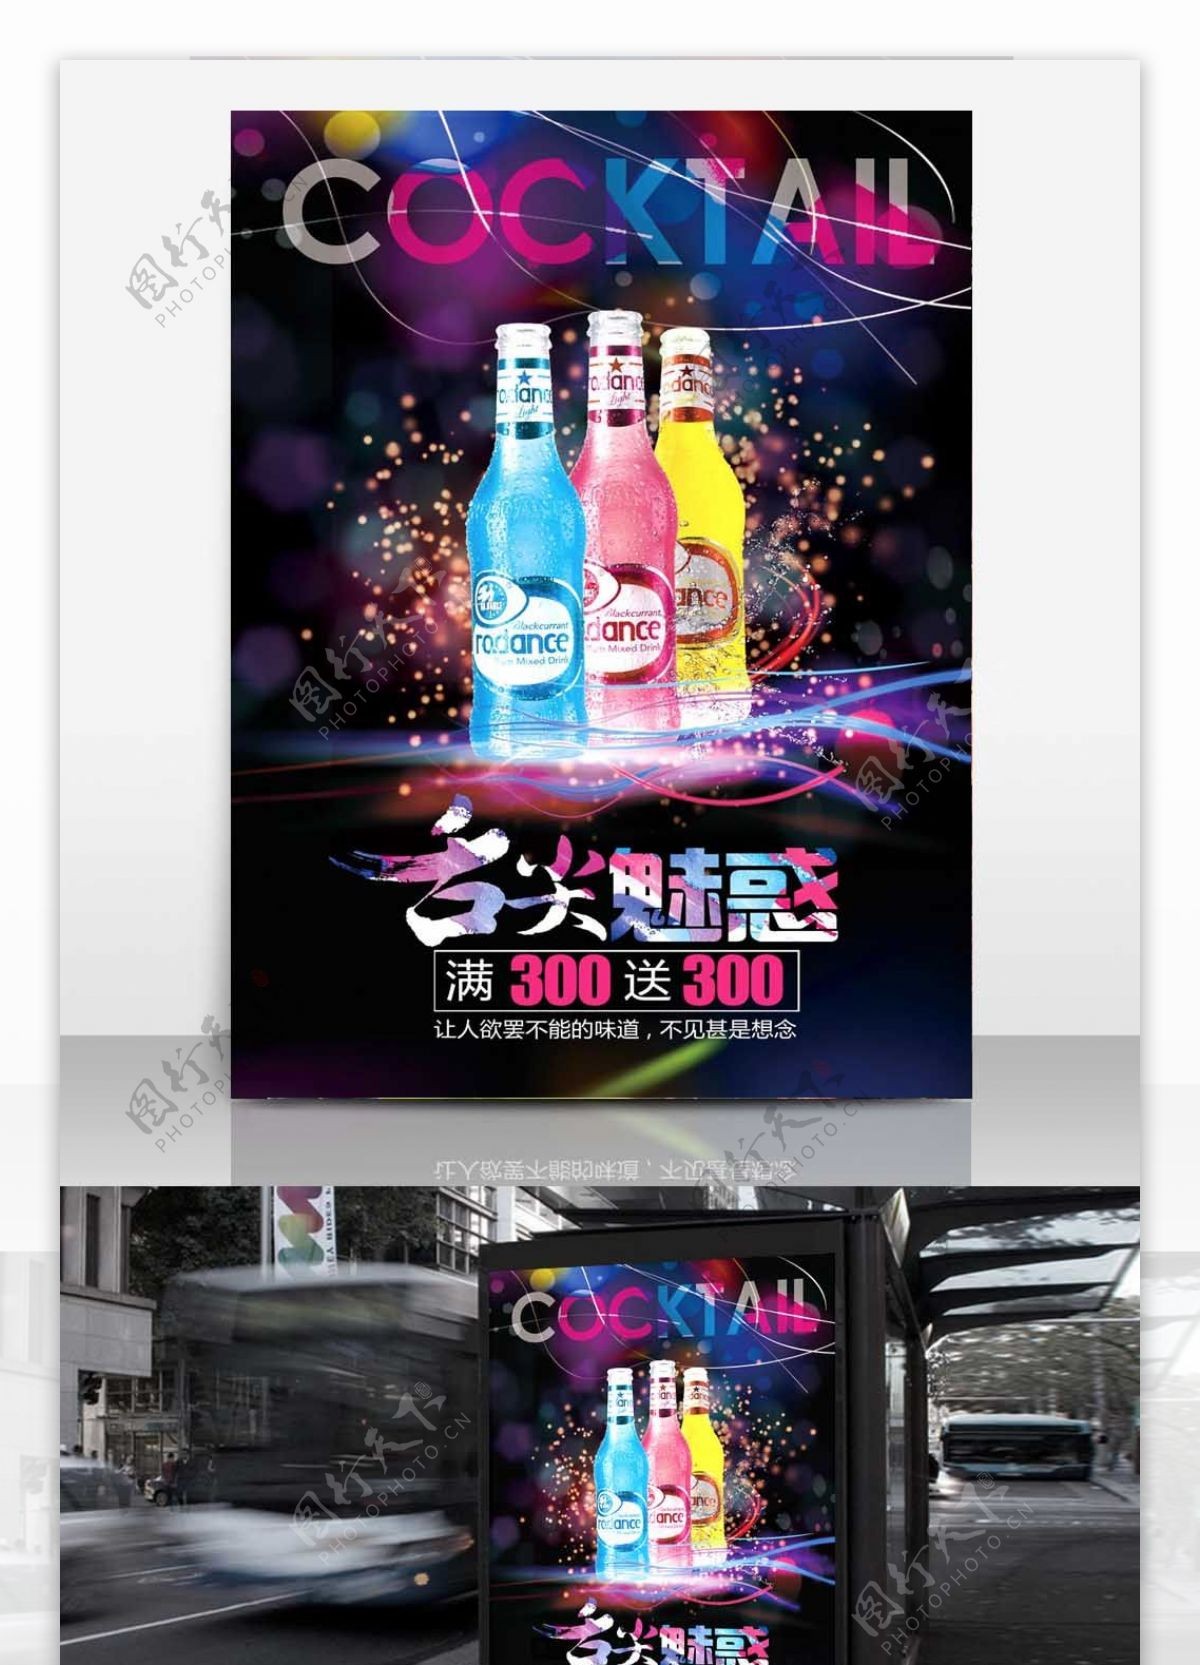 炫彩RIO促销舌尖魅惑满300送300鸡尾酒海报酒吧海报